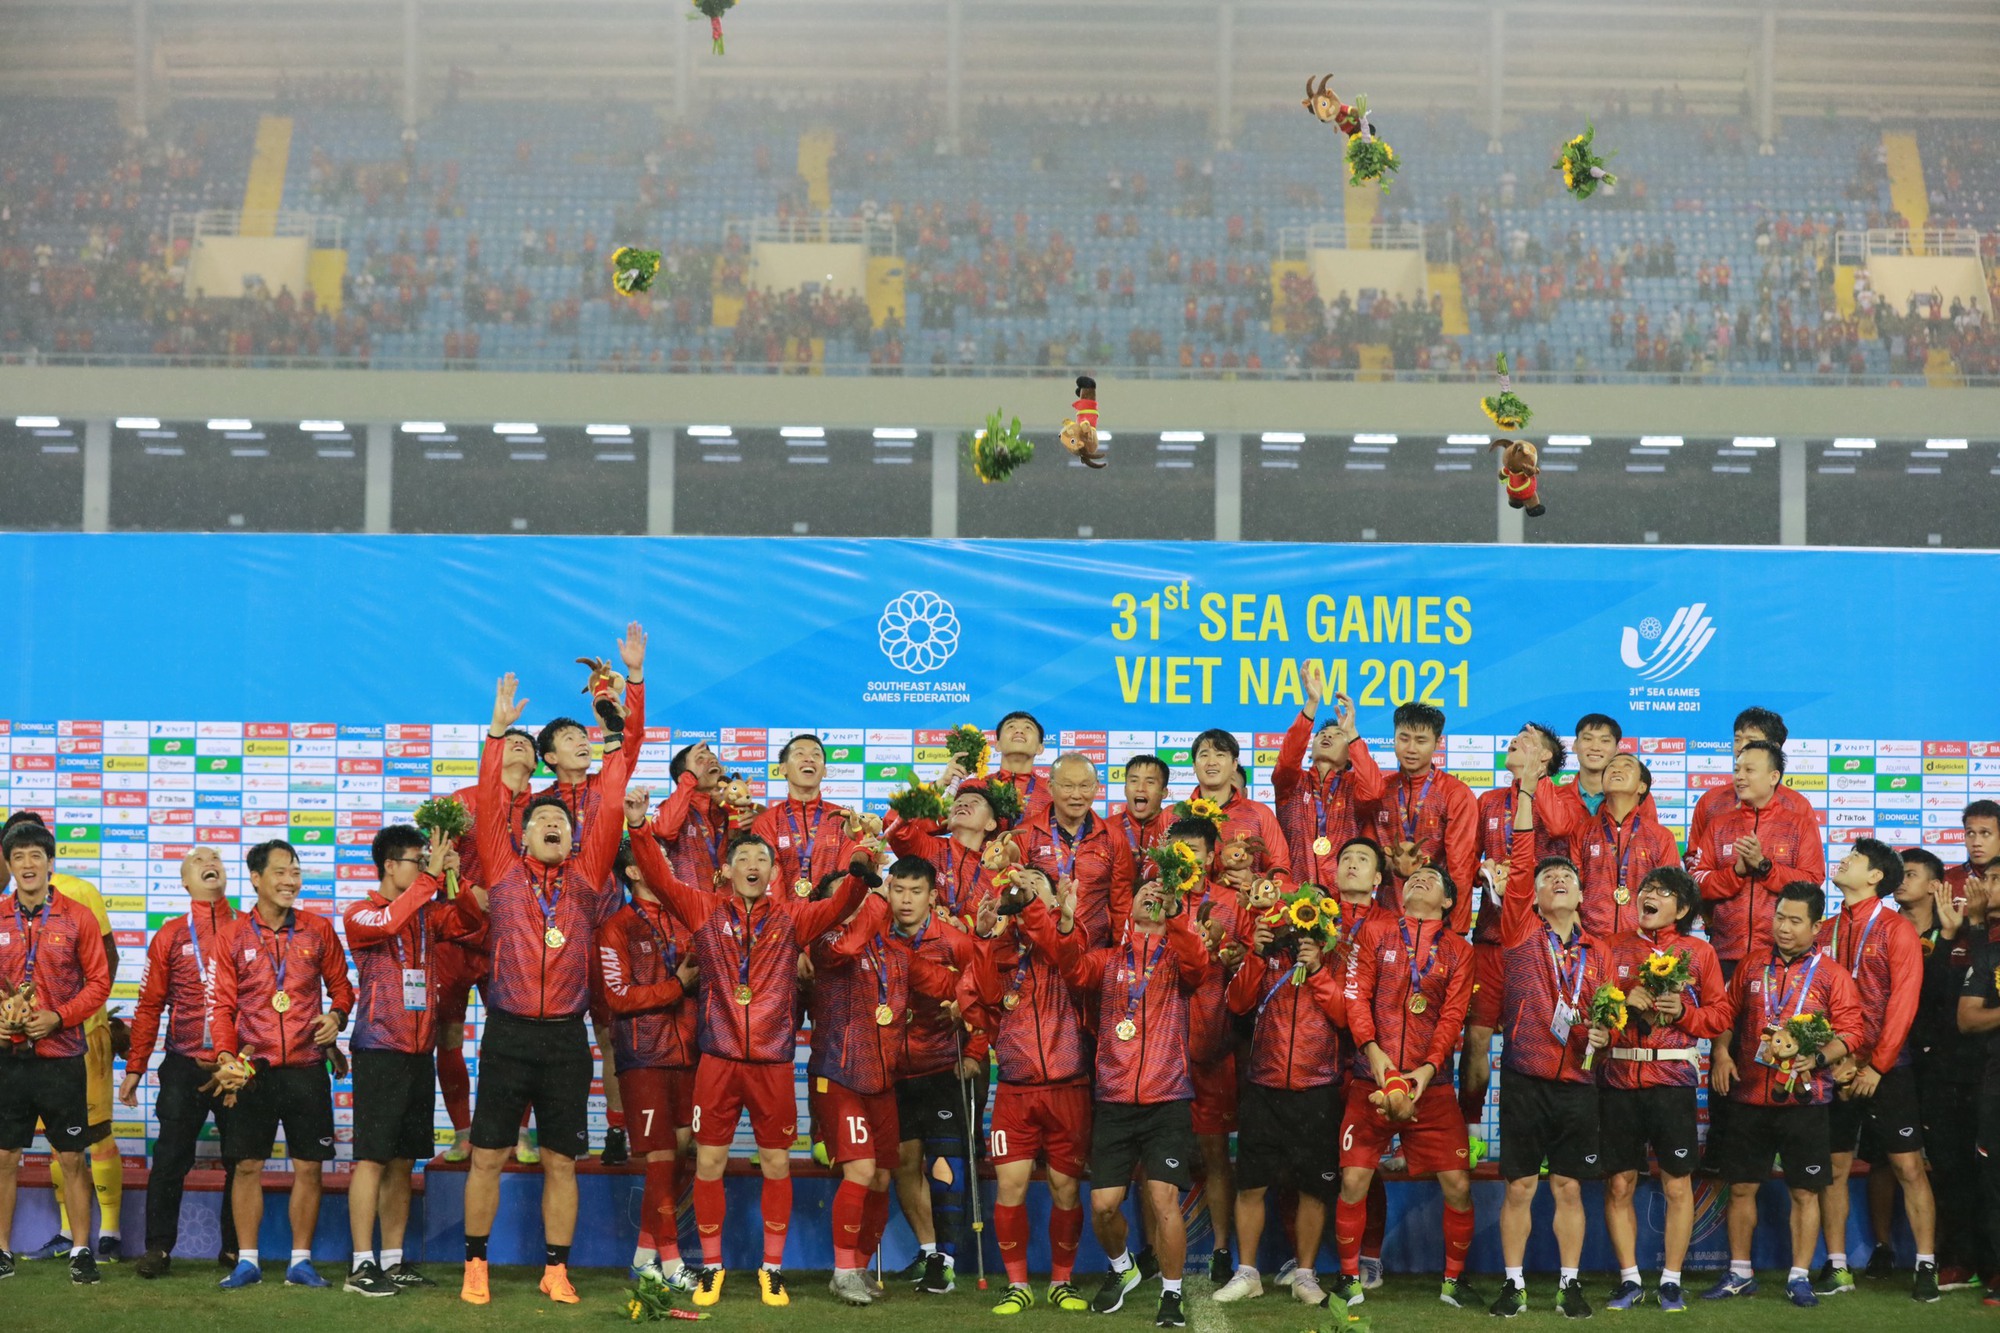 Đội tuyển U23 Việt Nam đã từng gây sốt với thành tích hiển trang tại giải U23 châu Á, hãy cùng xem hình ảnh các cầu thủ trẻ tài năng của Việt Nam trong quá khứ và hiện tại.